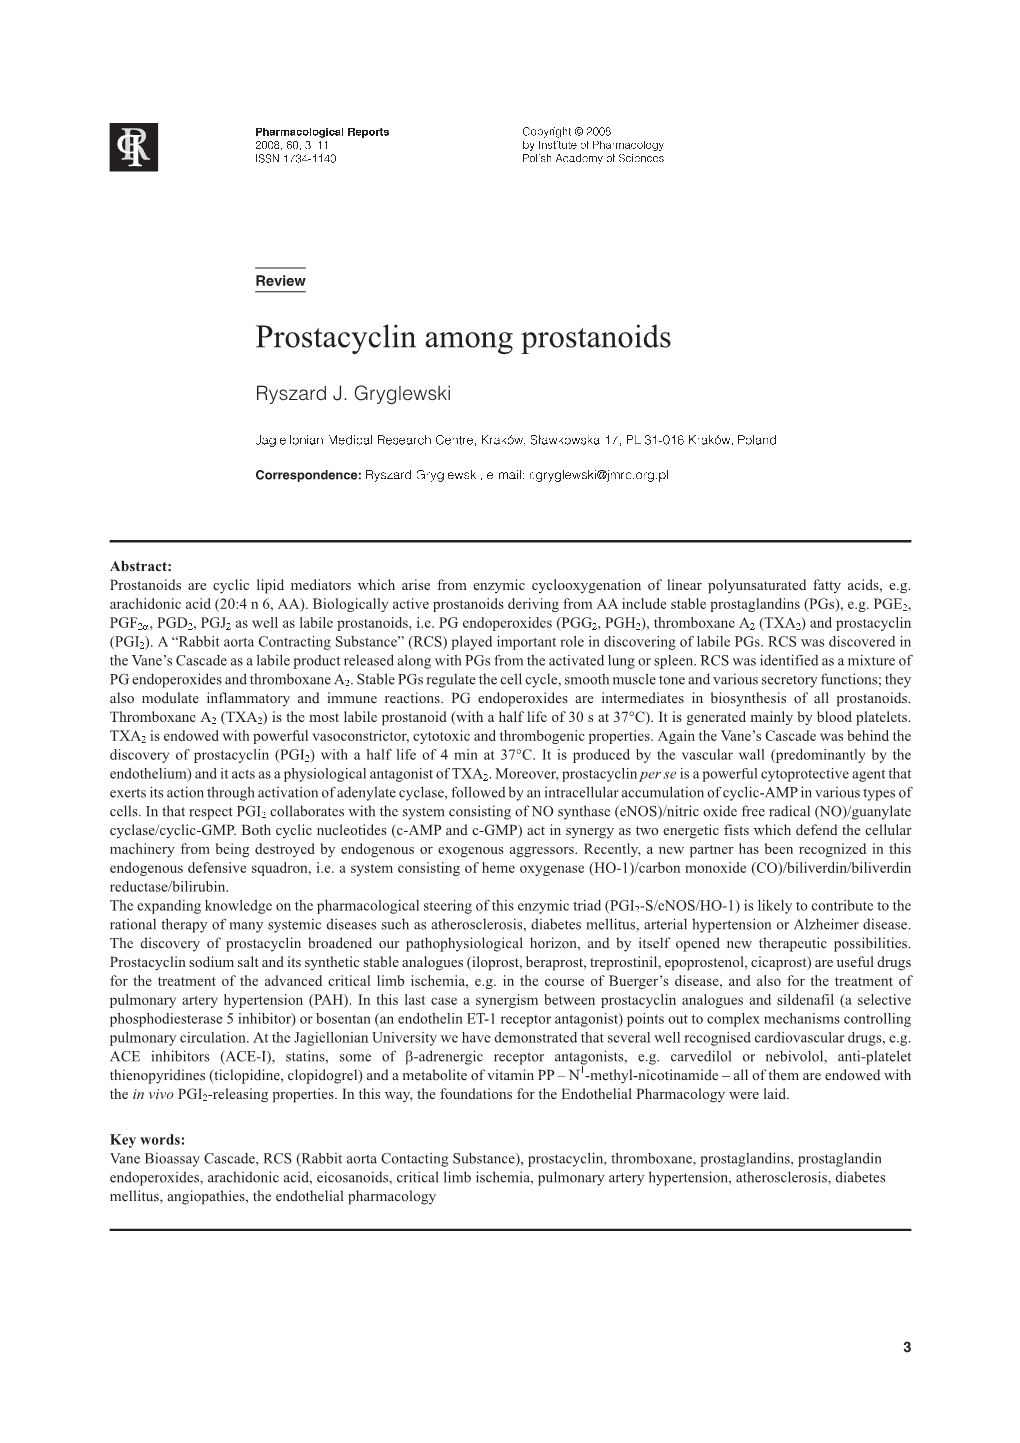 Prostacyclin Among Prostanoids